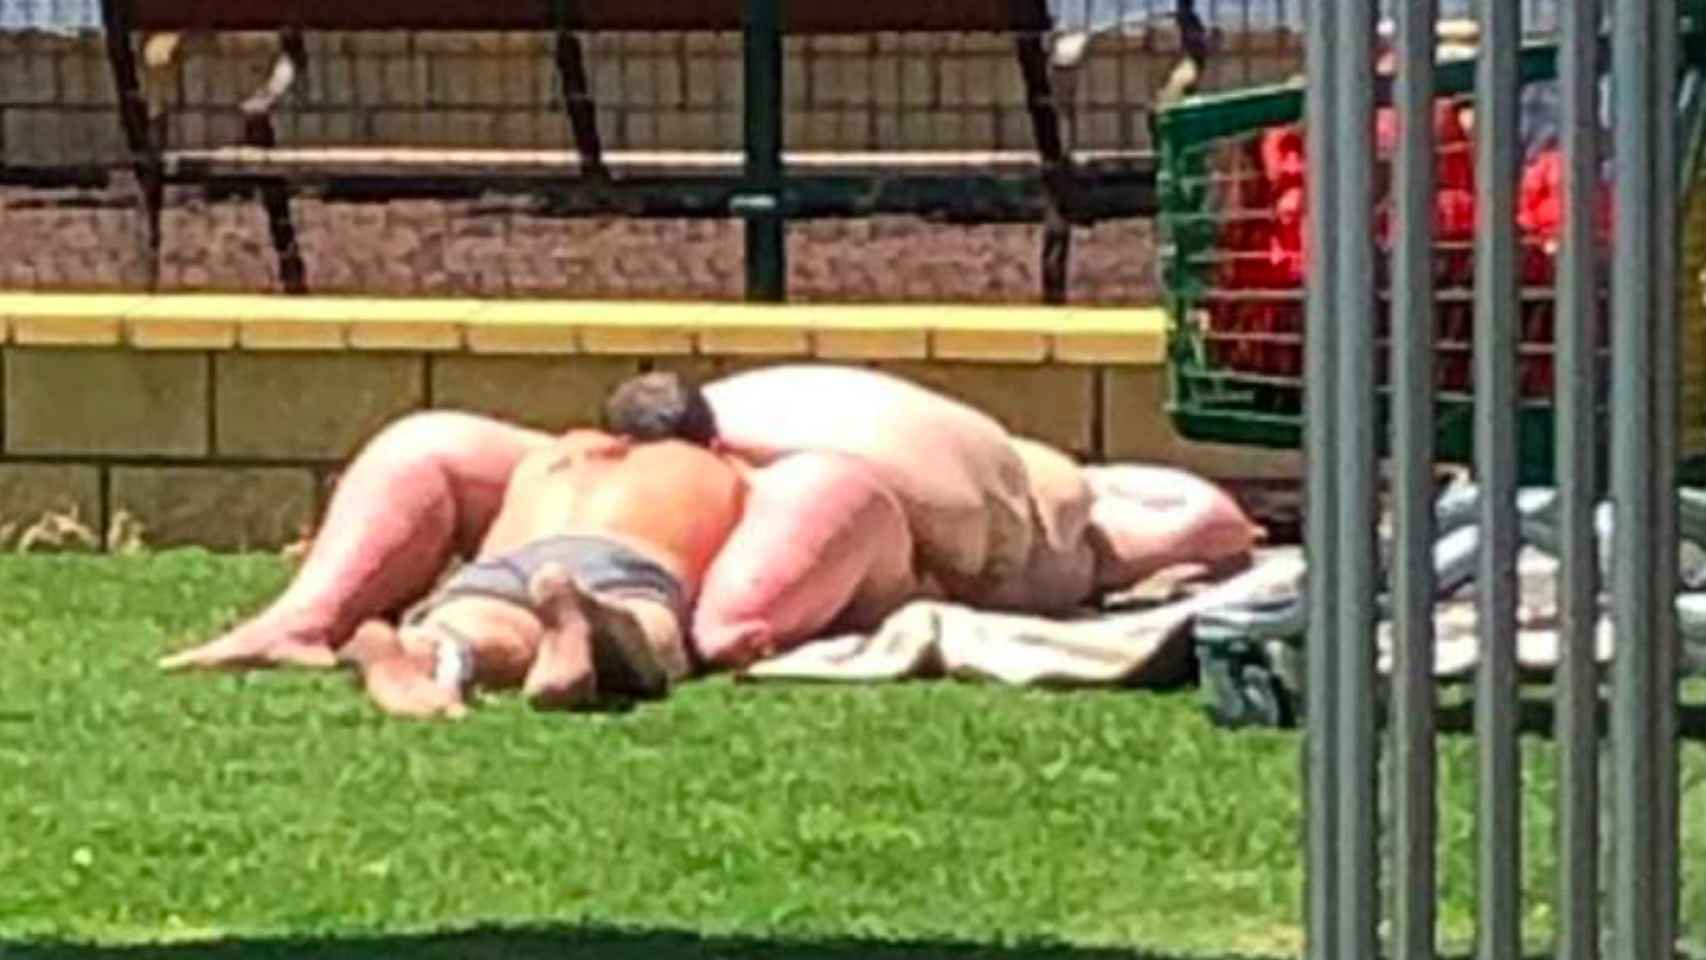 Una pareja practicando sexo en un parque a plena luz del día / REDES SOCIALES